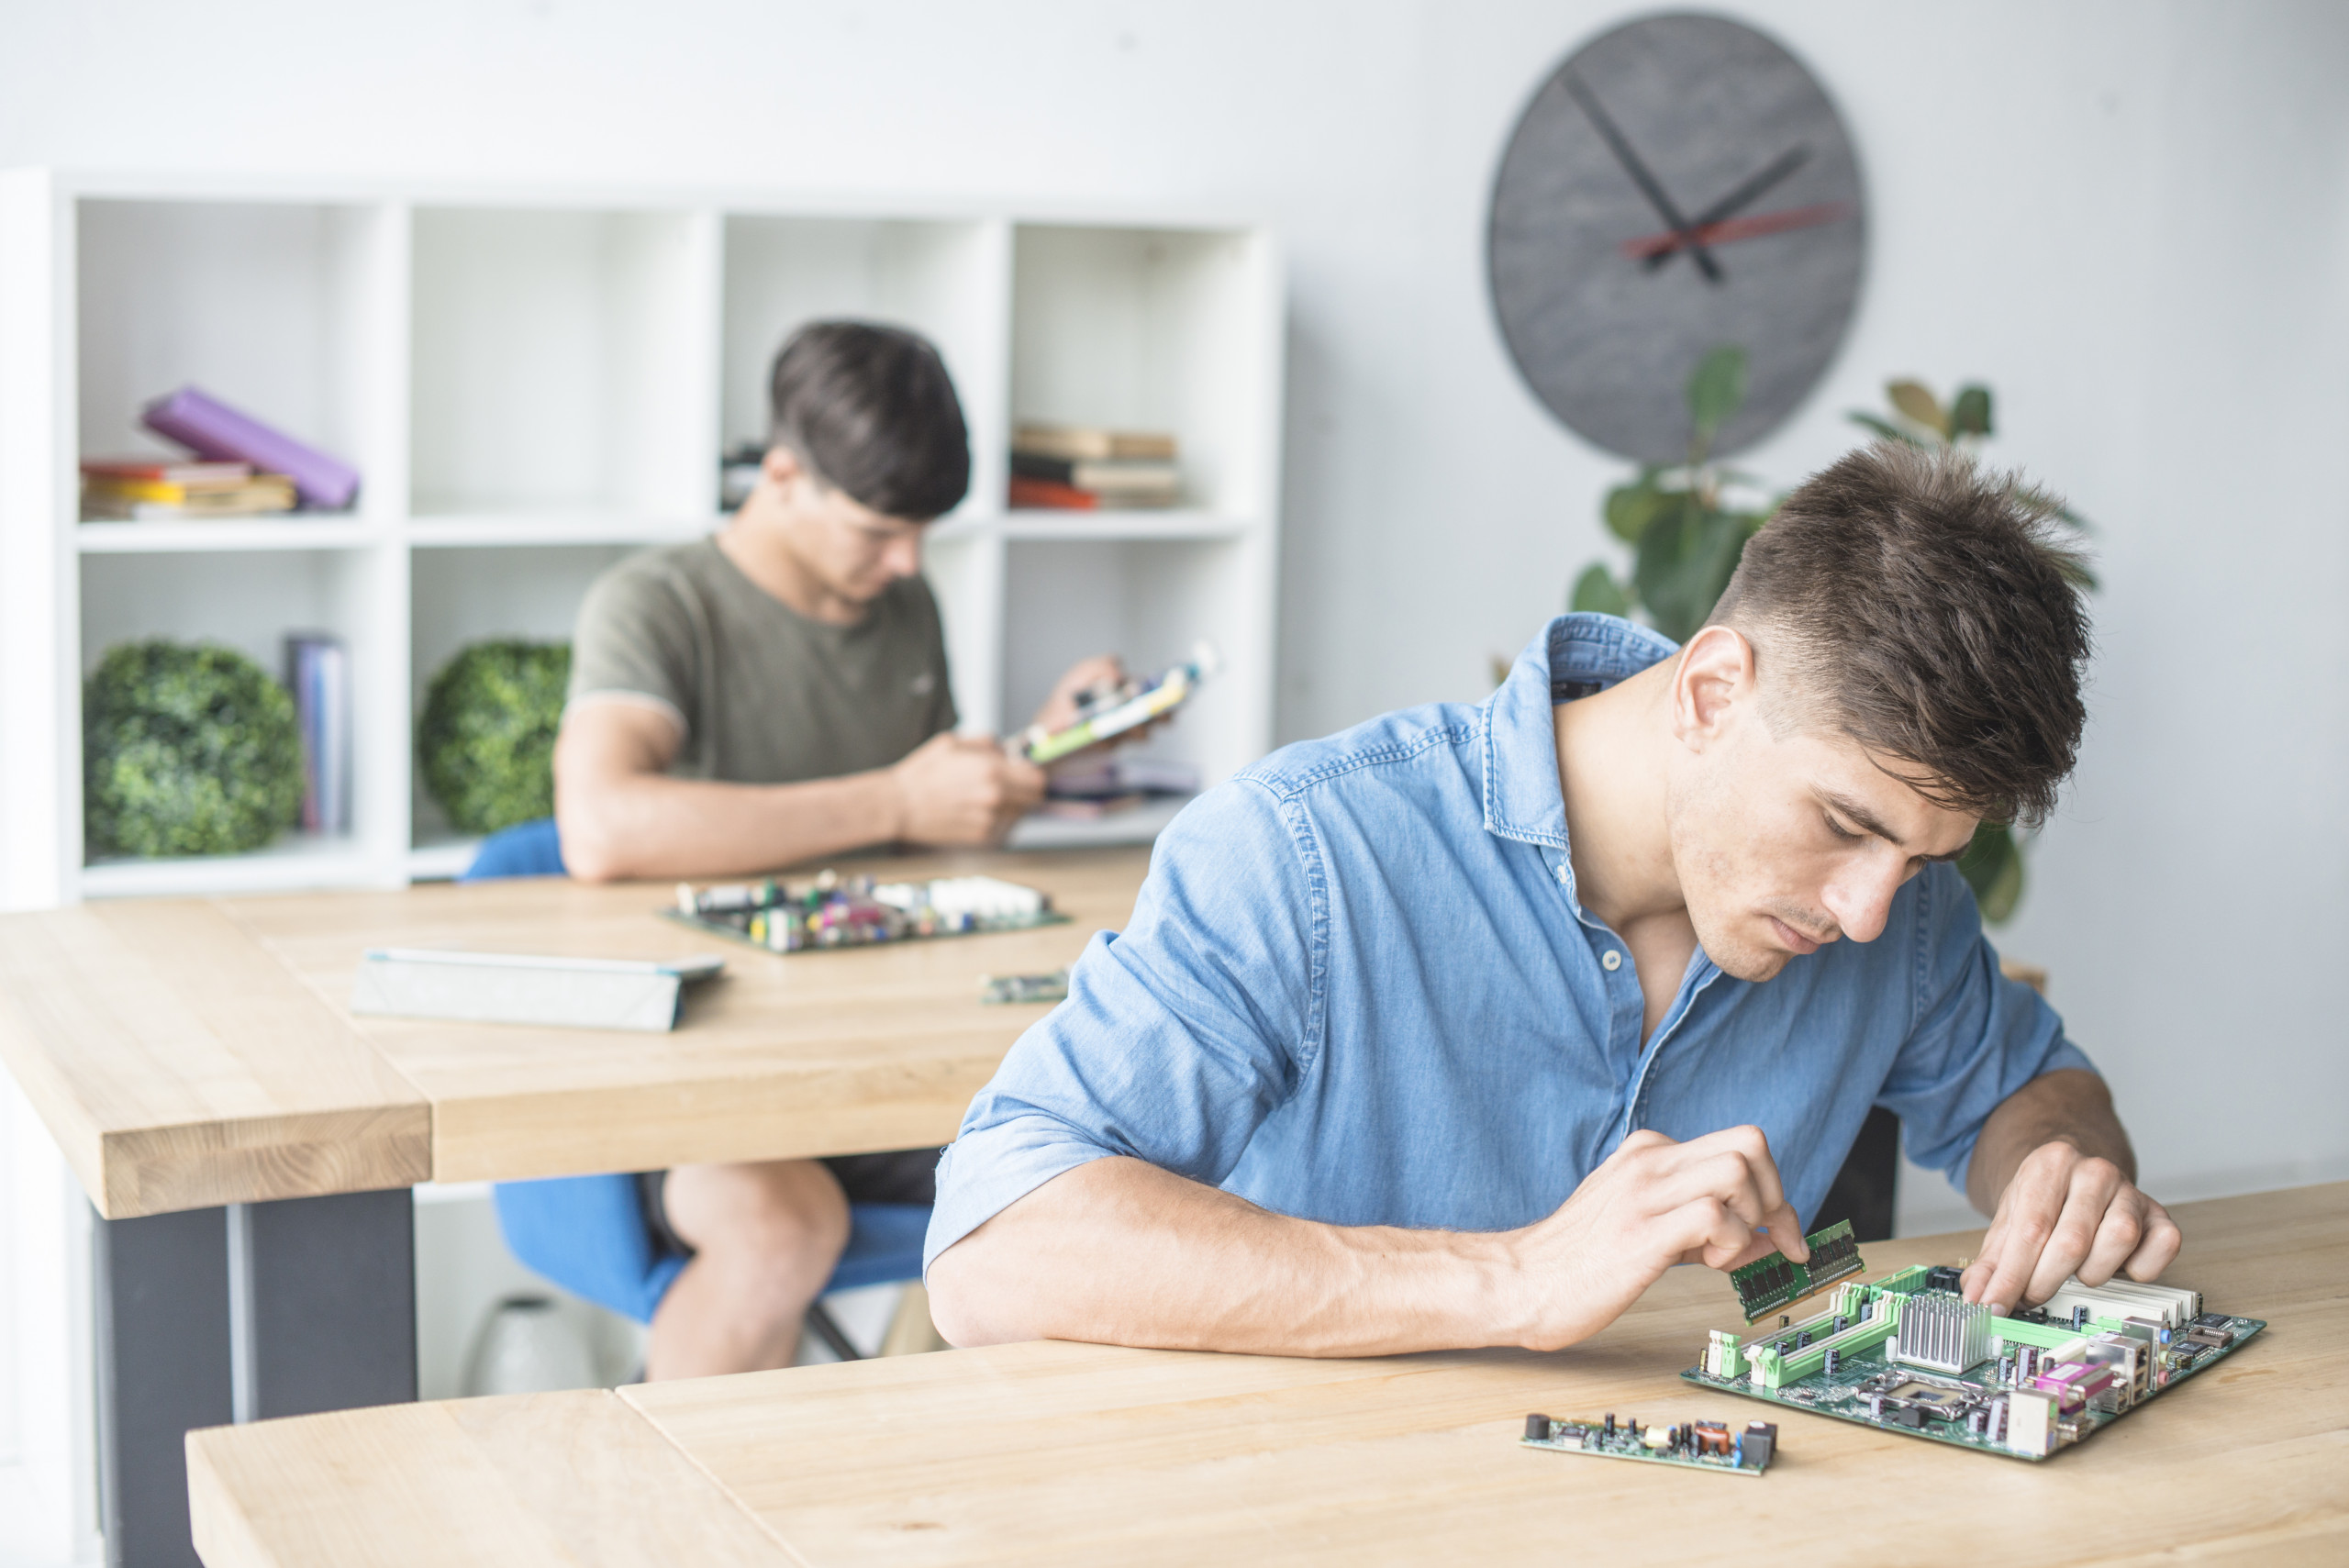 Zwei junge Männer arbeiten mit Computerteilen